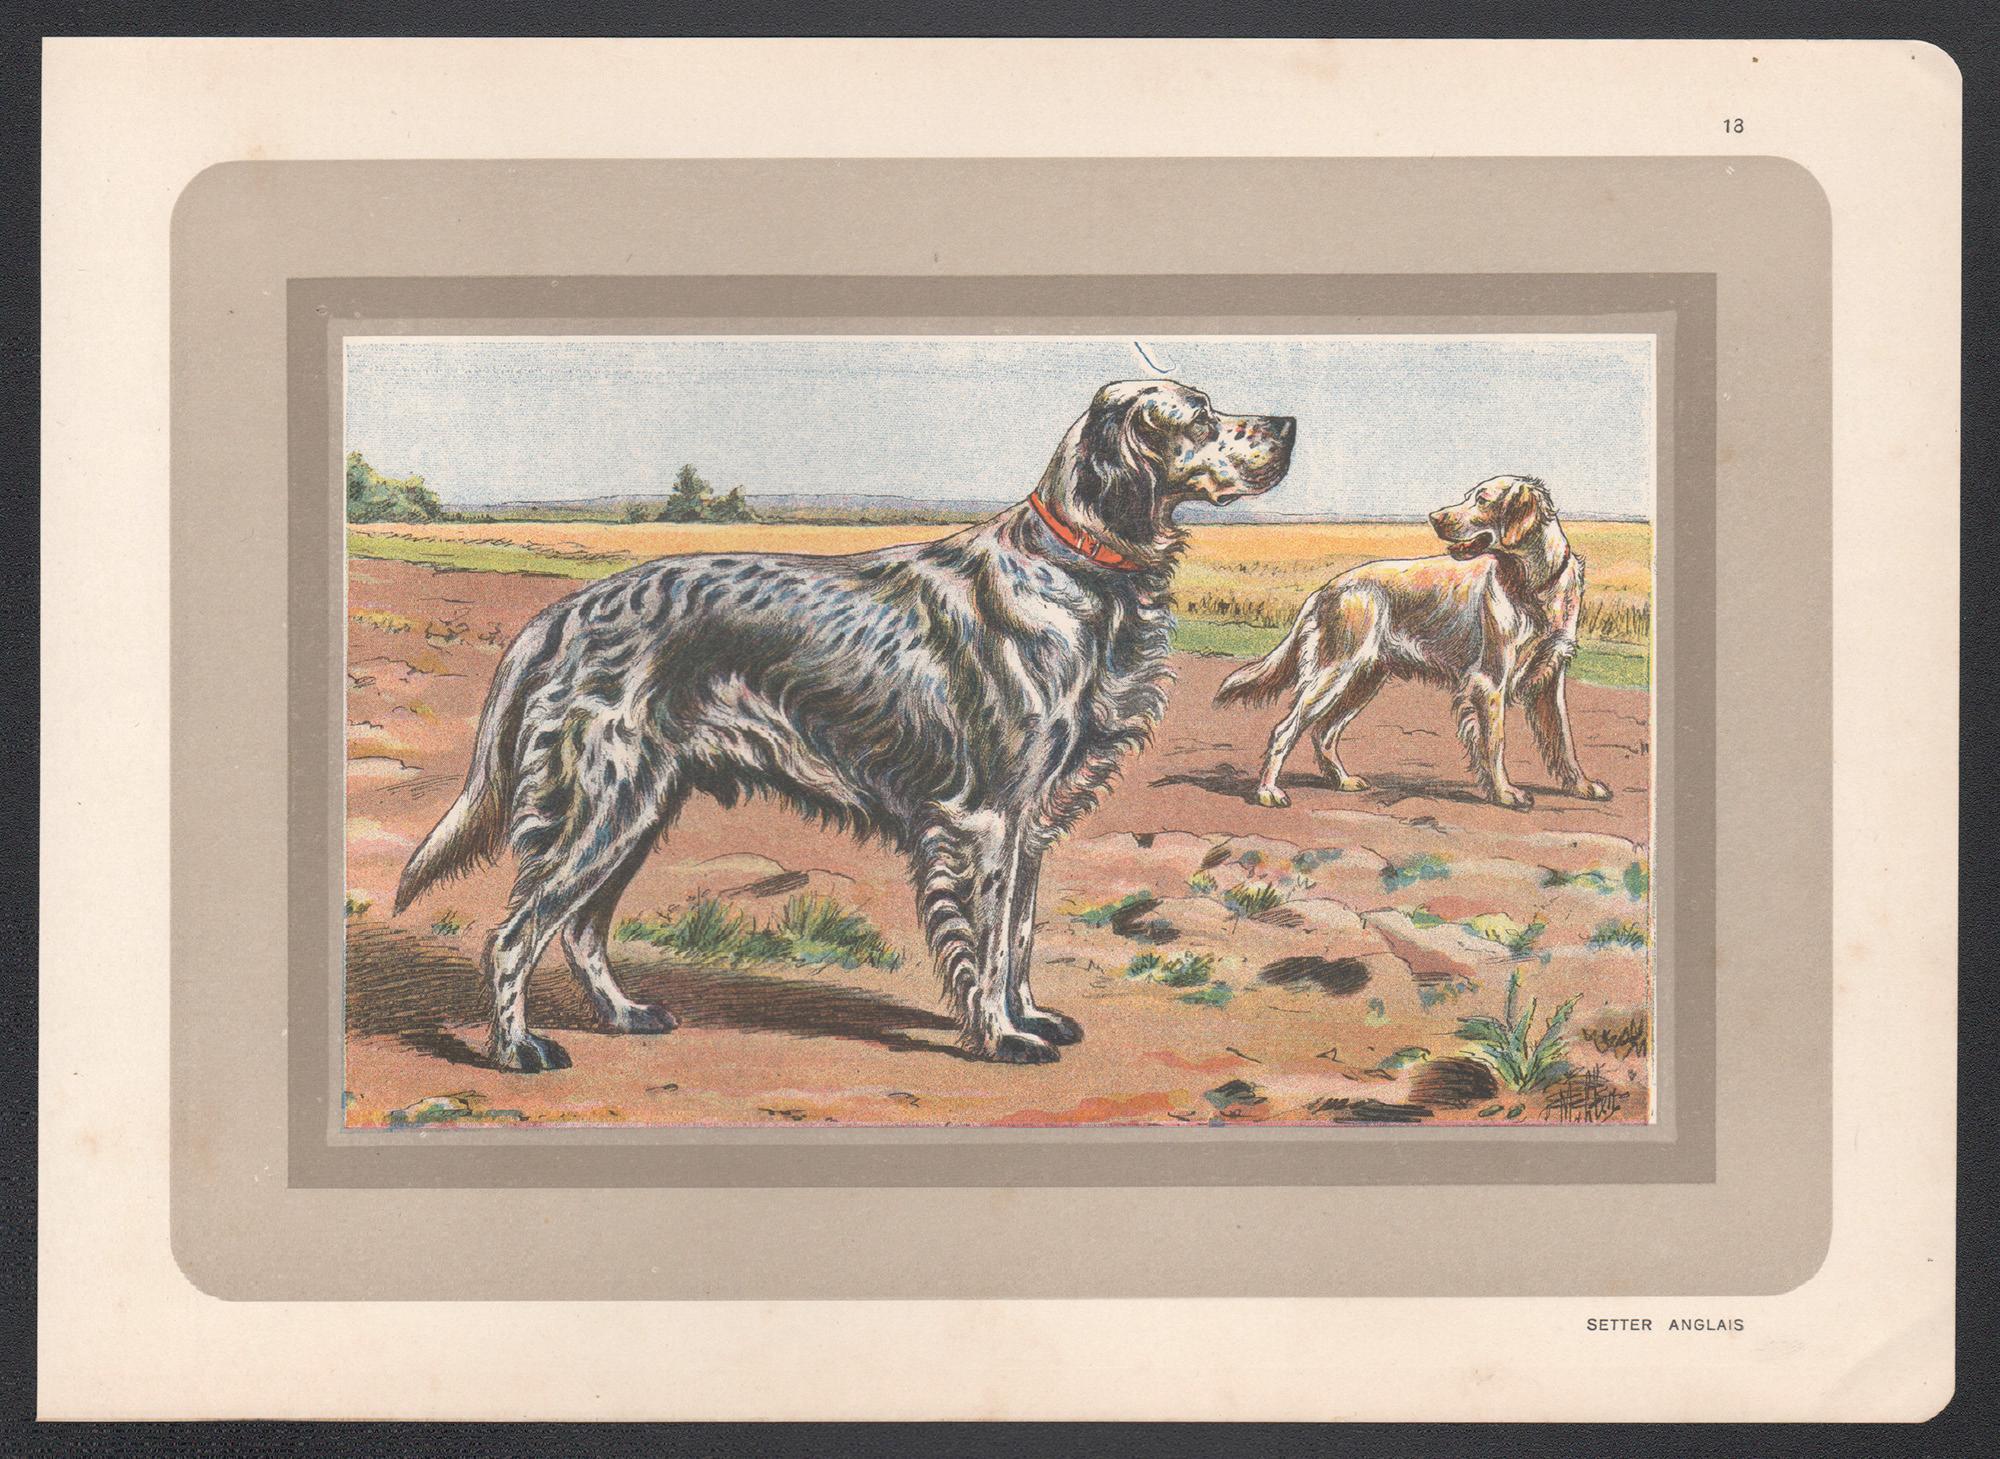 English Setter, impression chromolithographie française d'un chien de chasse, 1931 - Print de P. Mahler